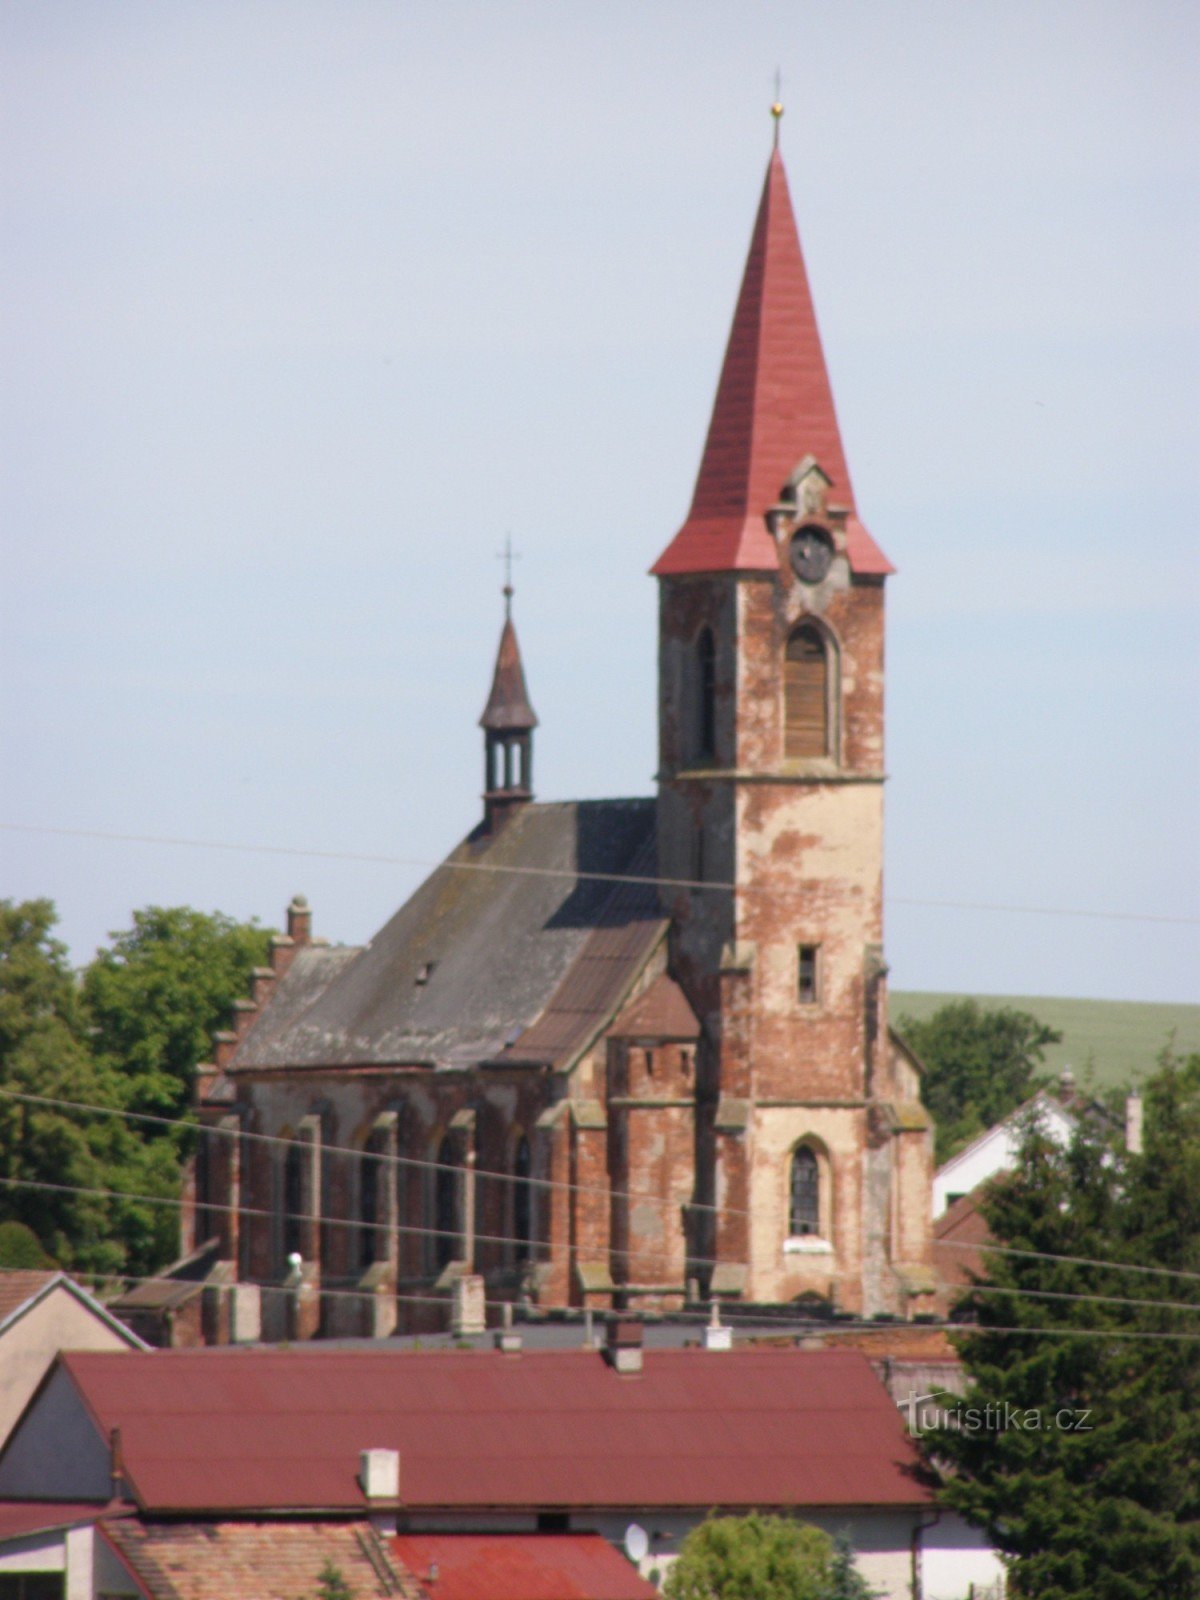 Suchá - Church of the Holy Trinity